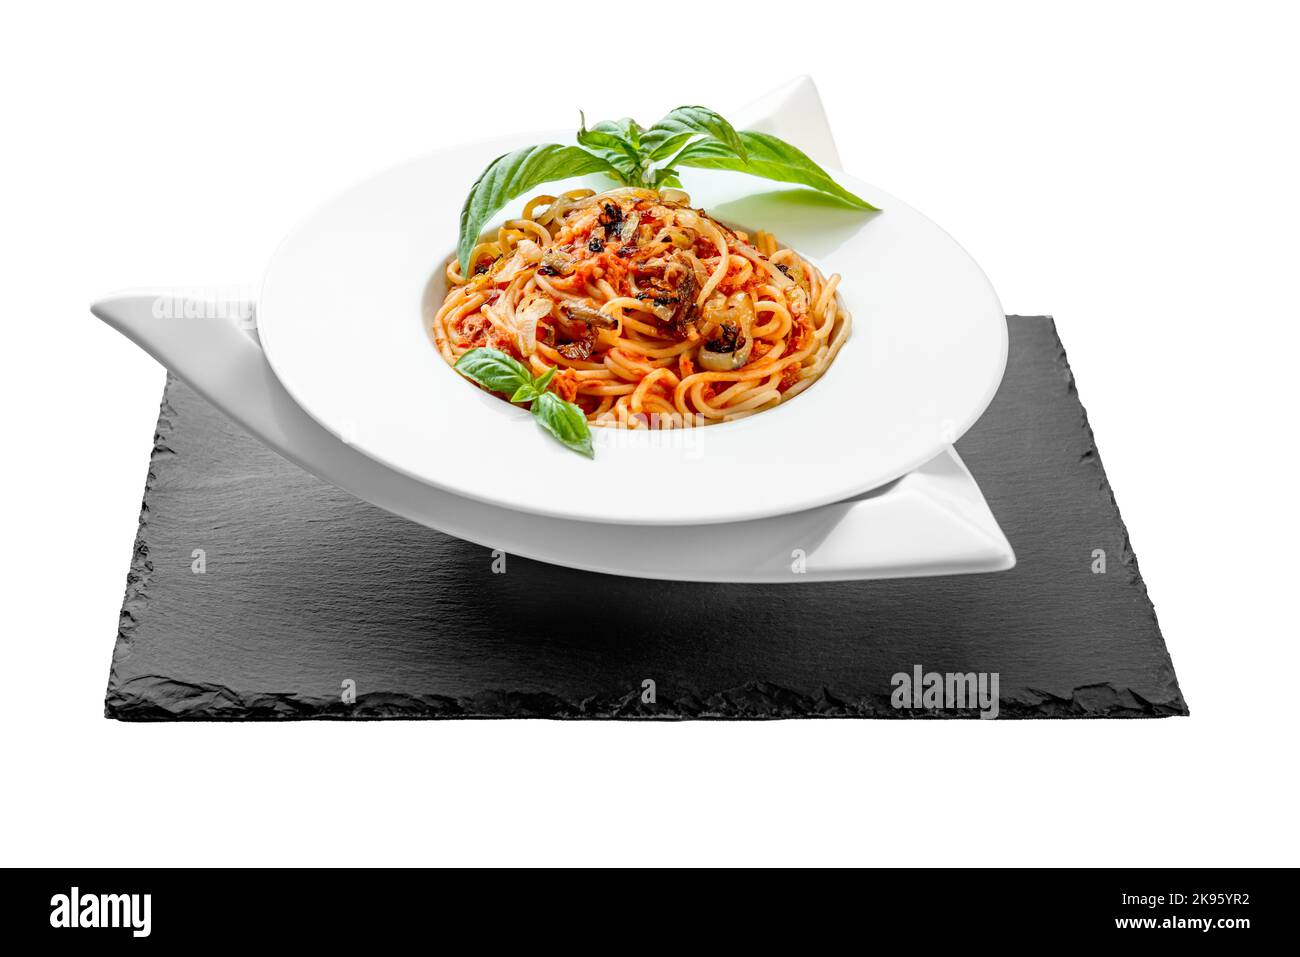 Spaghetti tuna pasta basil plate triangle shape slate table pretty appetizing Stock Photo